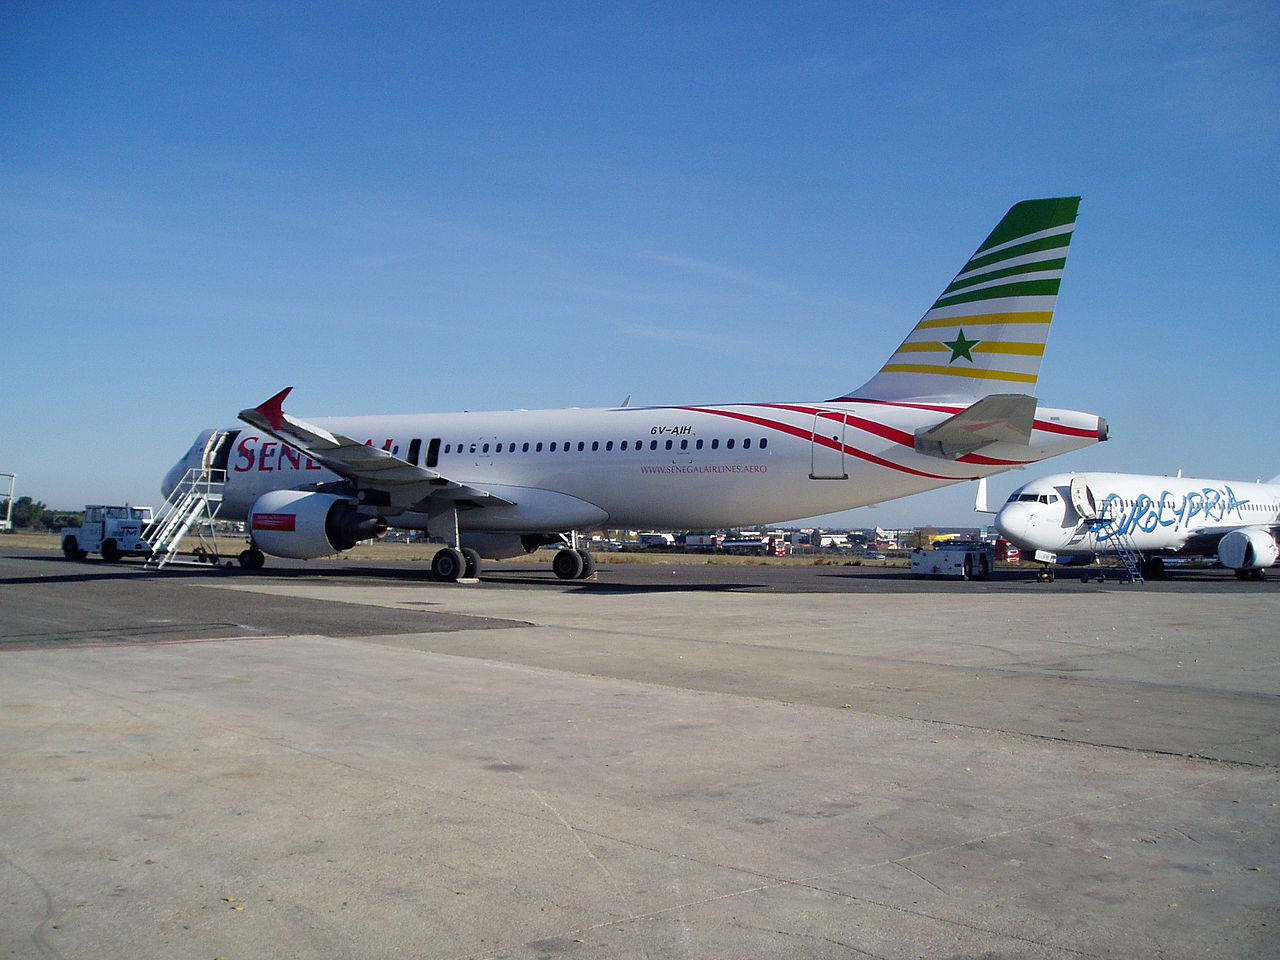 Le Sénégal met à mort Sénégal Airlines pour lancer une nouvelle compagnie